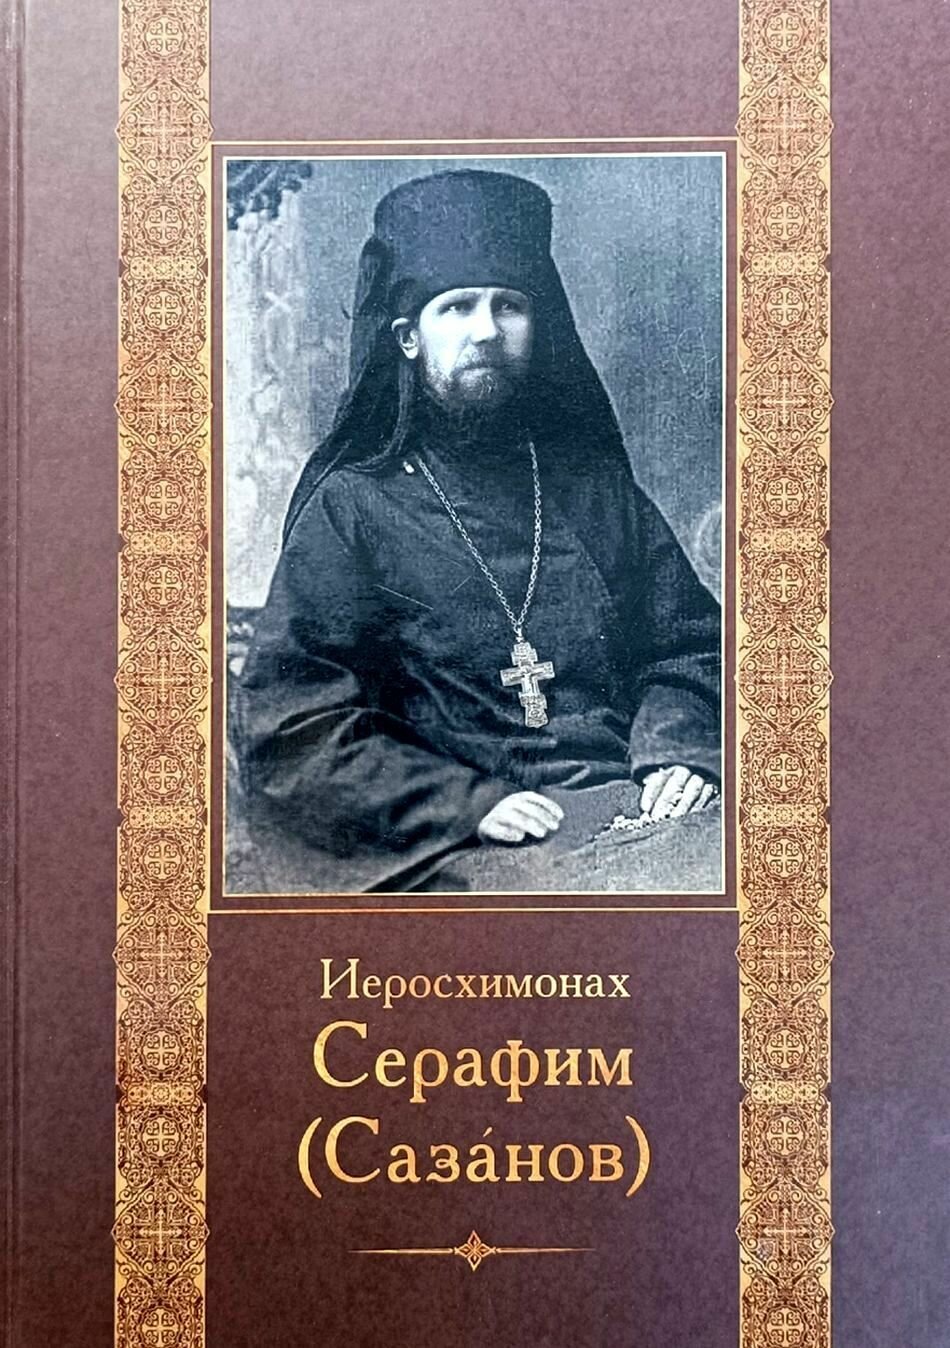 Книга "Иеросхимонах Серафим (Сазанов)". 2021